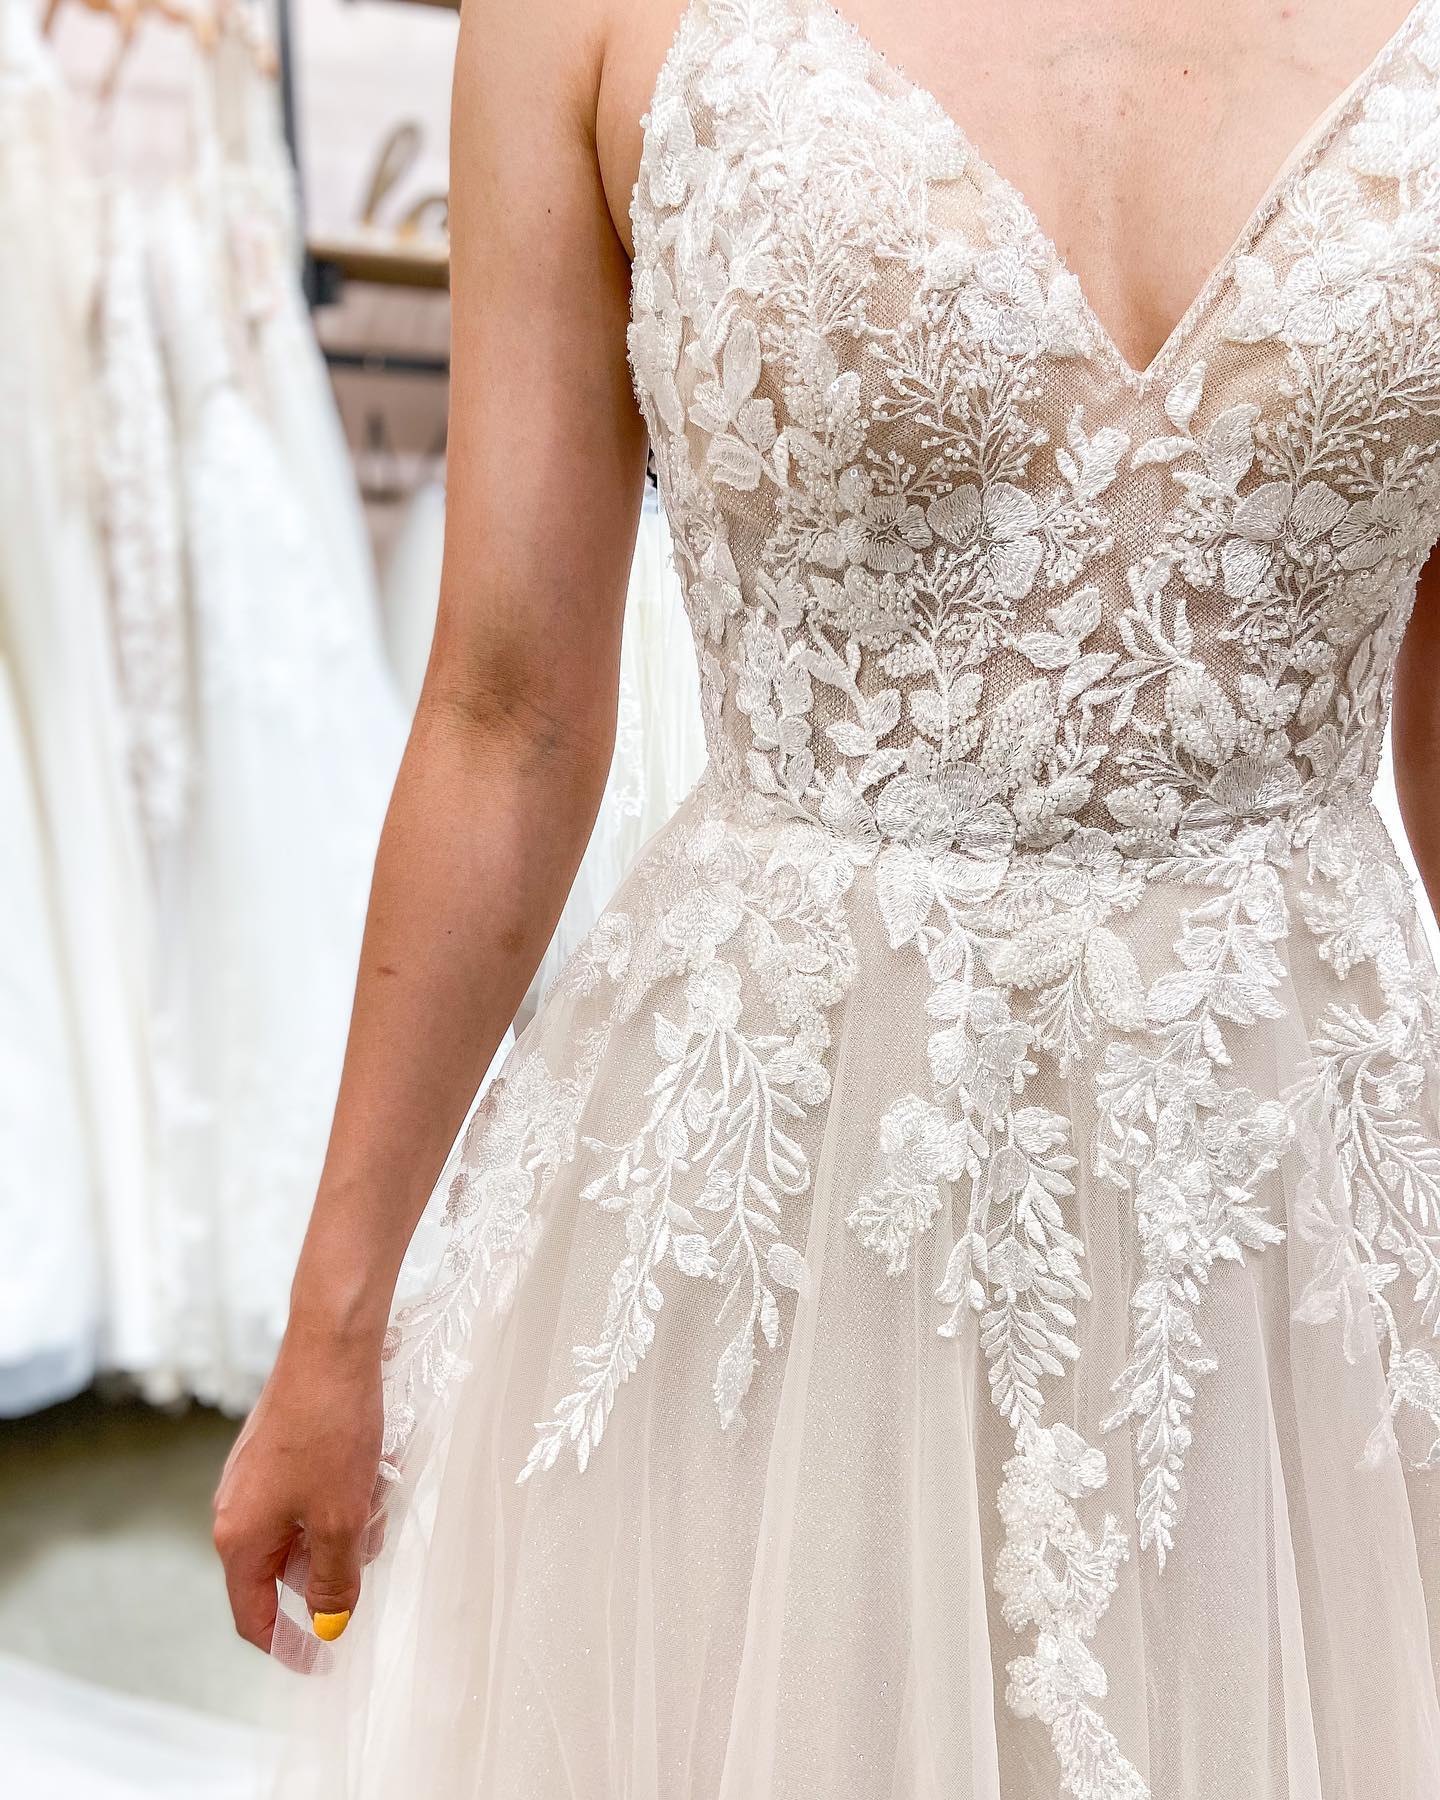 Finden Sie Schlichte Hochzeitskleider Mit Spitze online bei babyonlinedress.de. A Linie Brautkleider aus Tüll maß geschneidert kaufen.